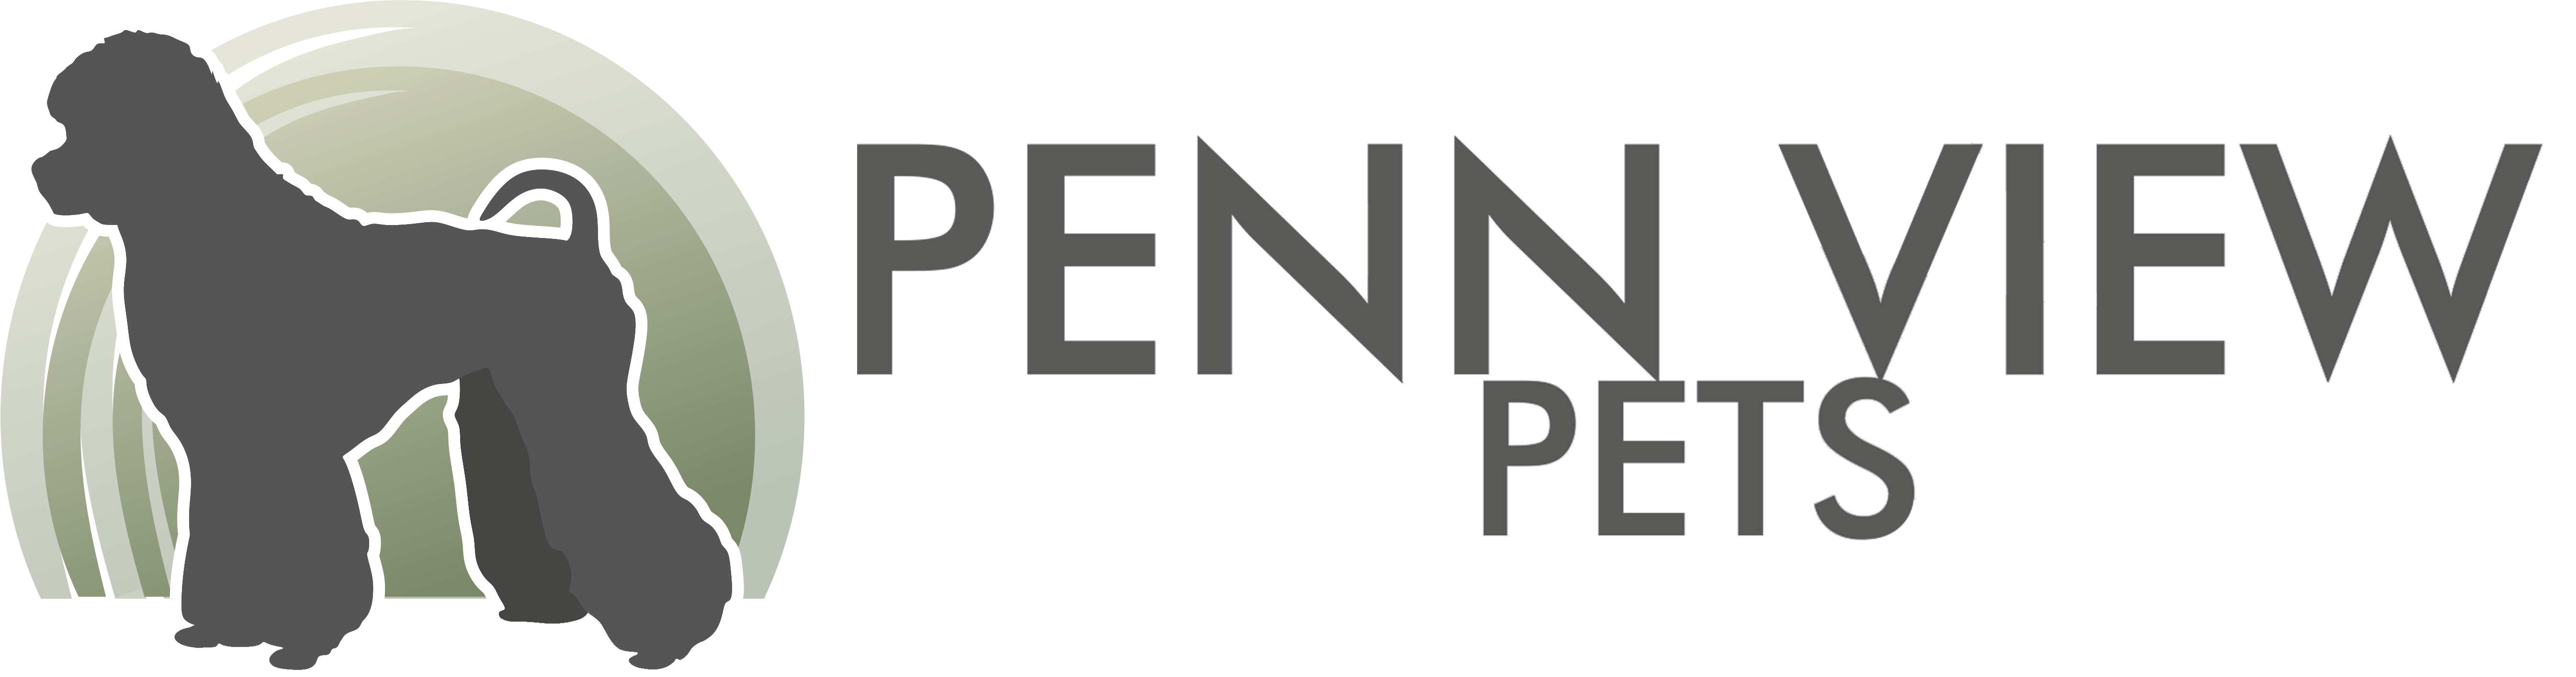 Penn View Pets Logo